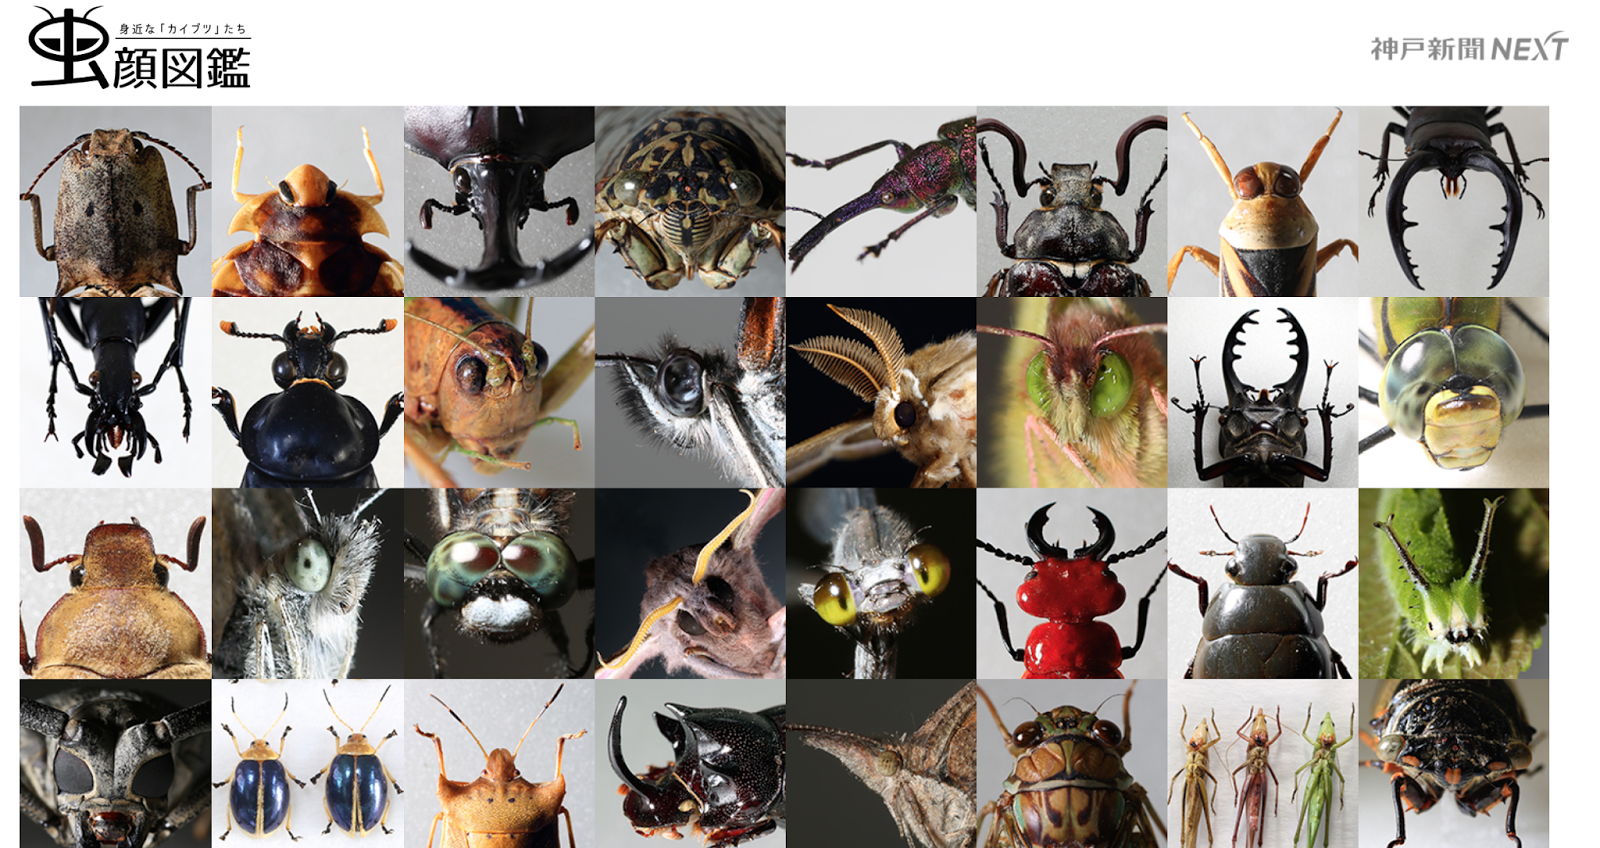 Status 703 昆虫好きな人にはたまらない 神戸新聞nextで虫顔図鑑を見よう